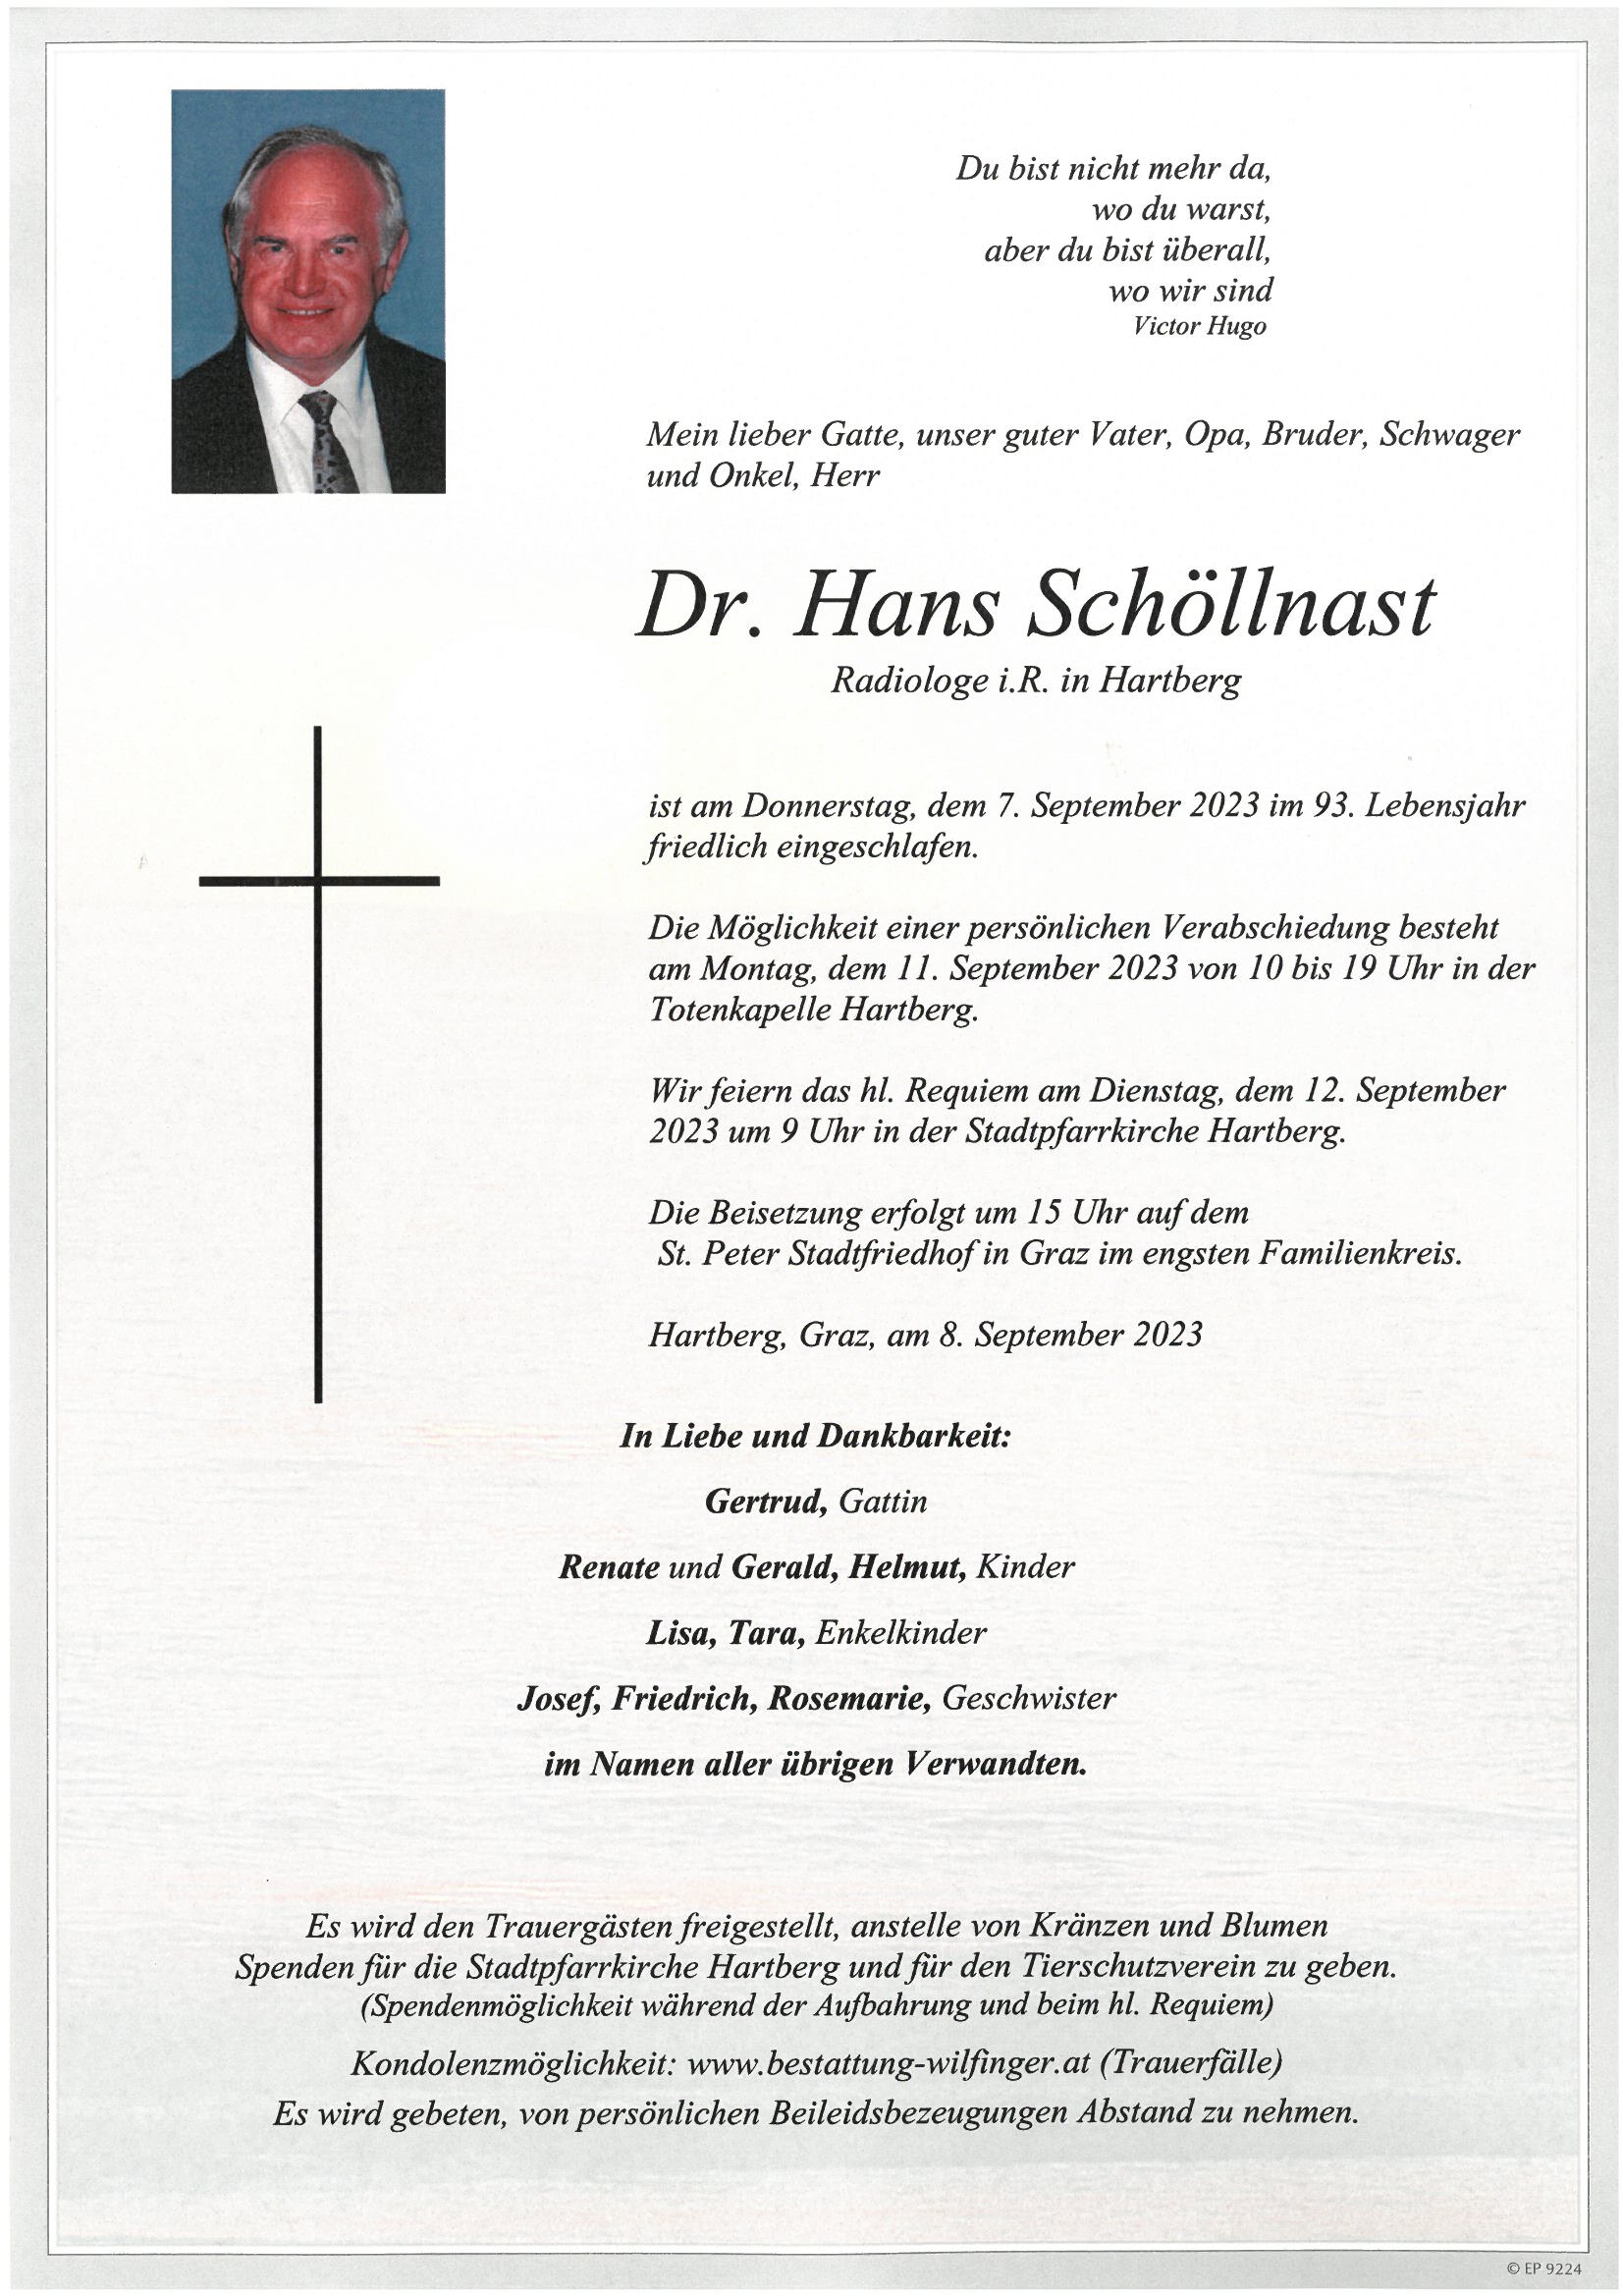 Dr. Hans Schöllnast, Ring